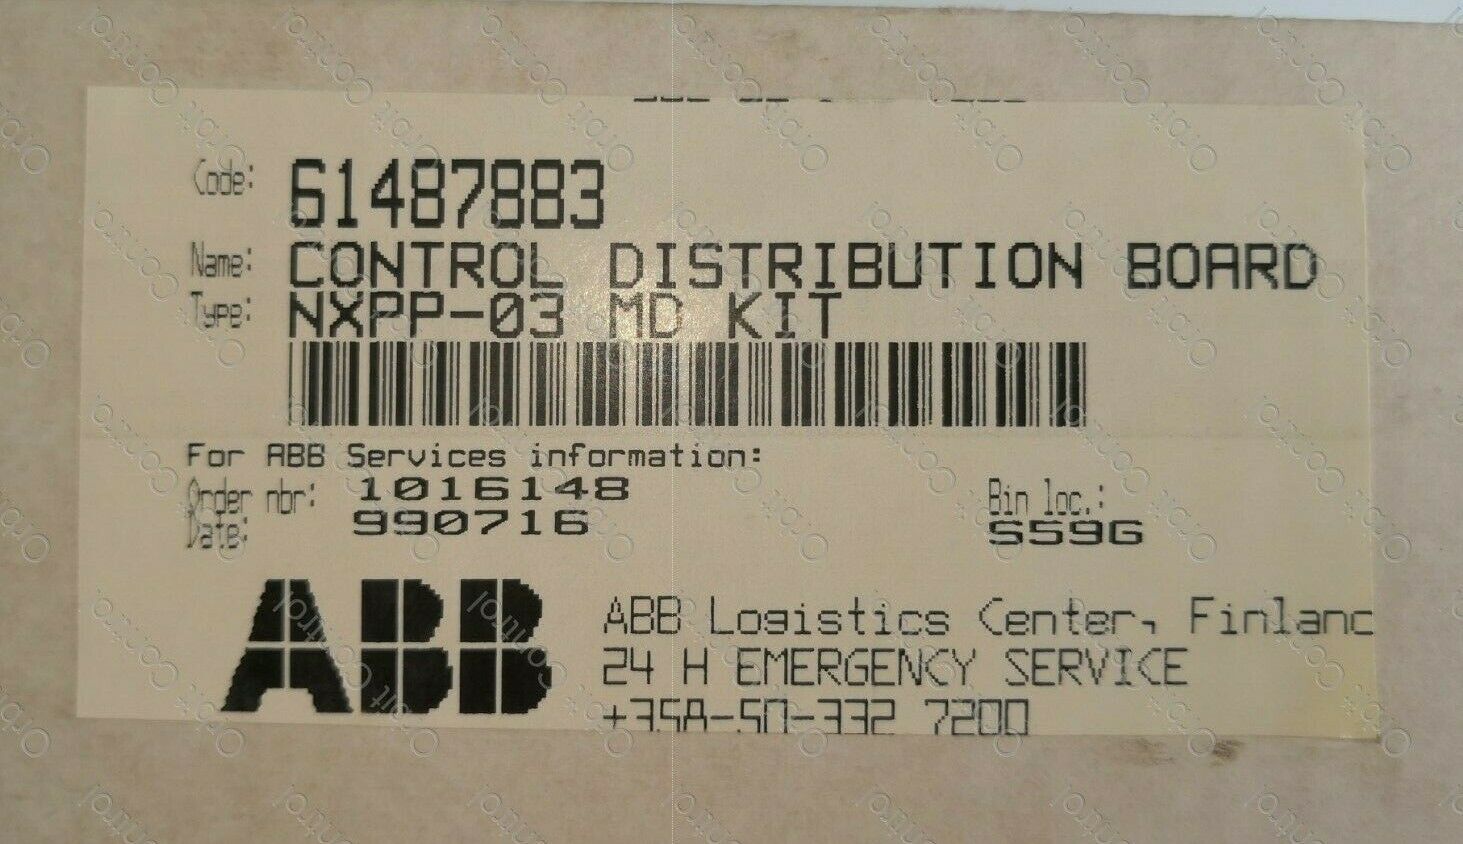 全新 ABB nxpp-03 MD 套件代码 ： 61487883 控制配电板 